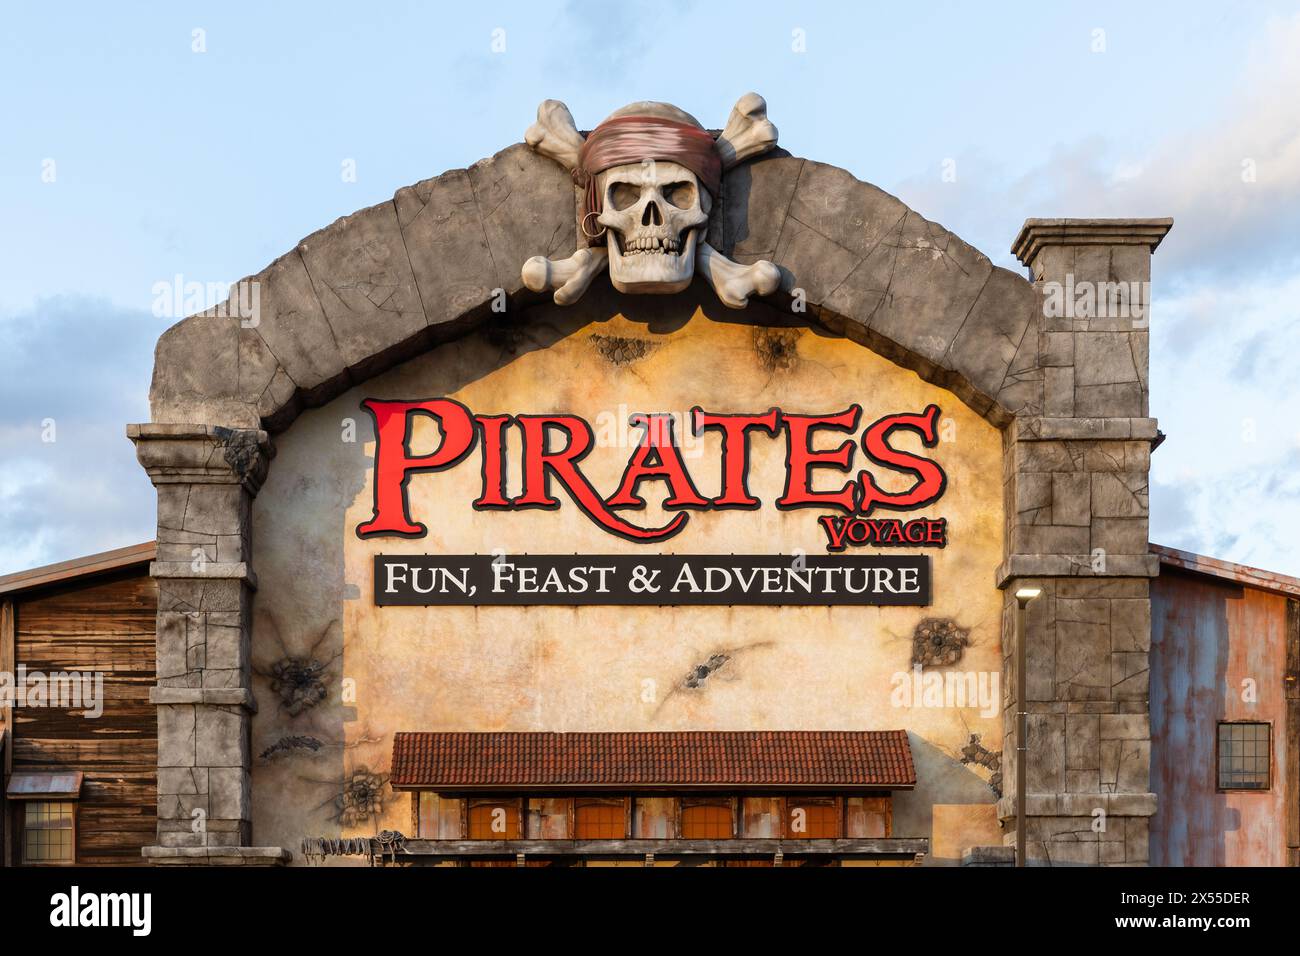 Pirates Voyage Dinner and Show è un teatro a tema pirata per tutta la famiglia situato nel centro di Pigeon Forge, Tennessee. Foto Stock